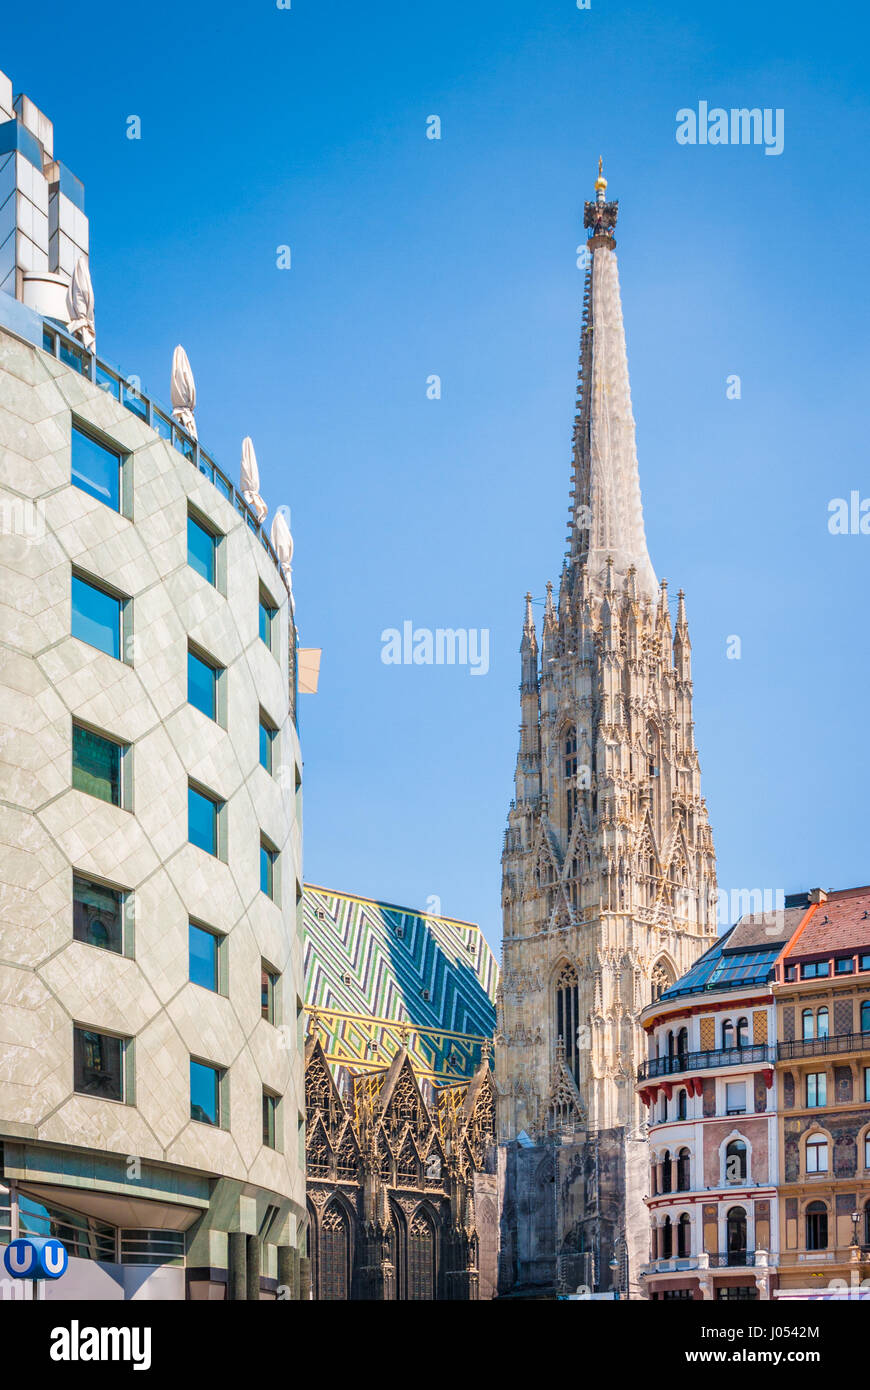 Belle vue sur le centre-ville historique de Vienne avec le célèbre Saint Stephen's Cathedral et architecture historique sur une journée ensoleillée en été, Autriche Banque D'Images